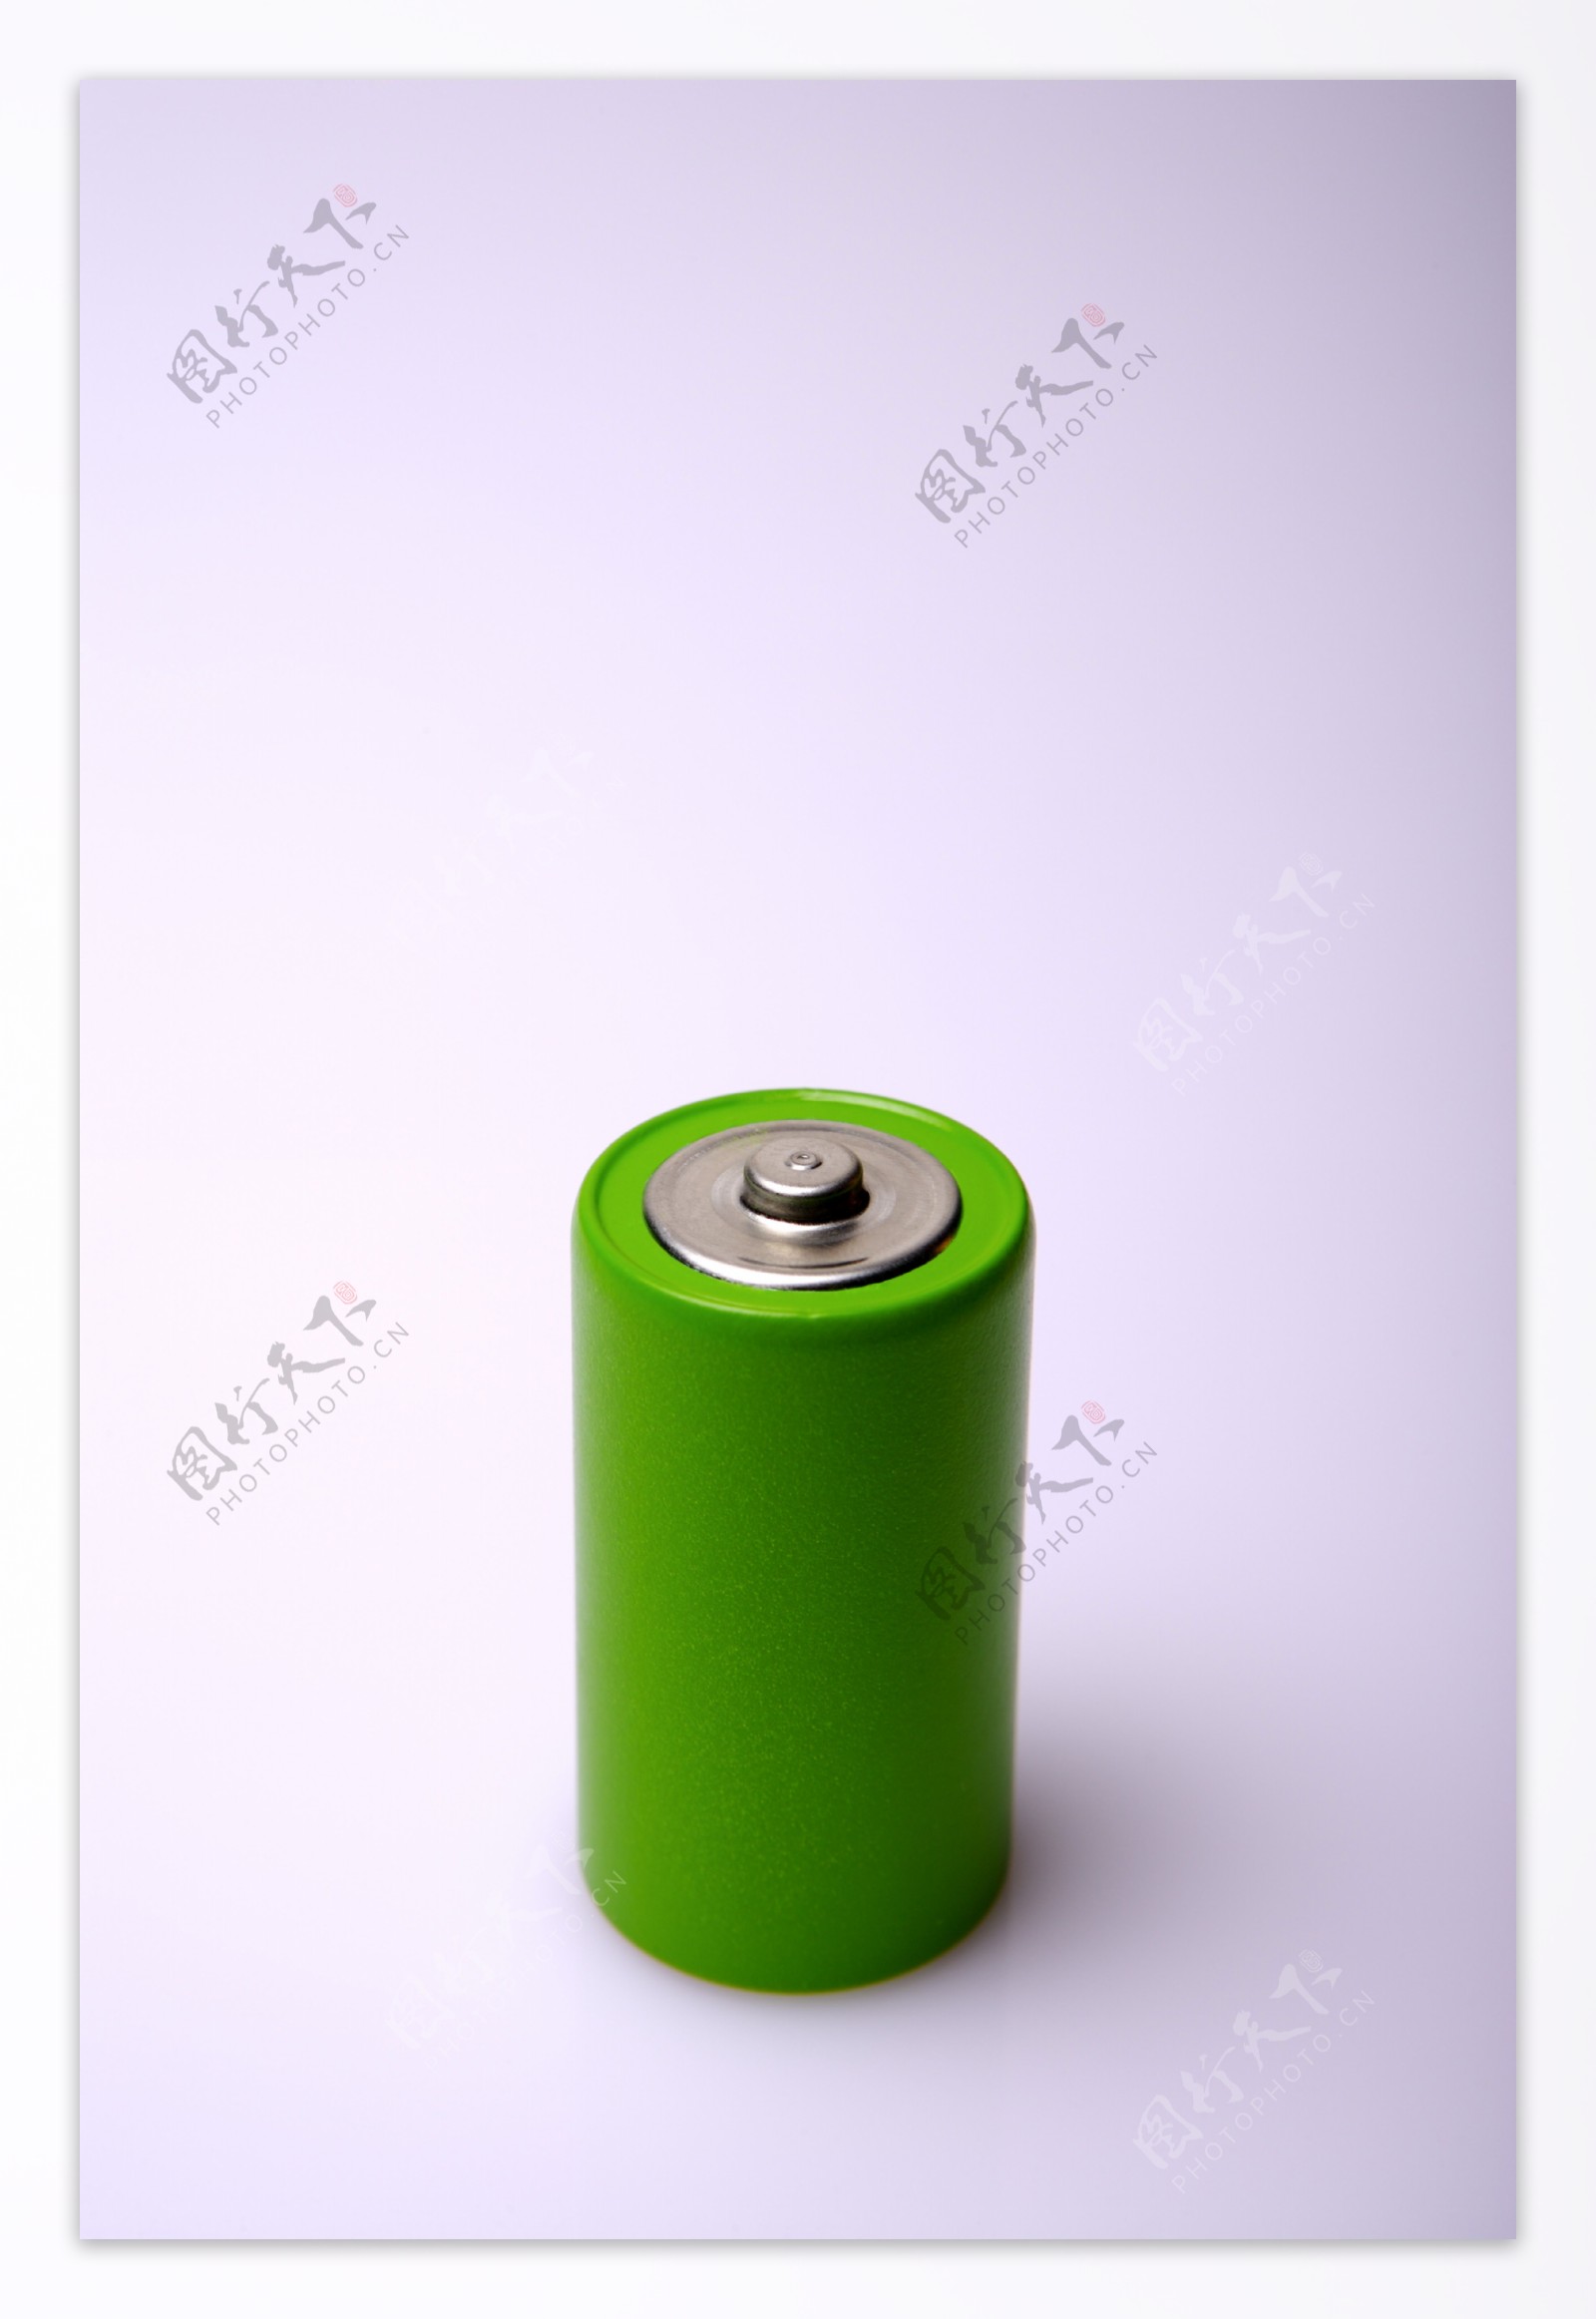 环保电池图片